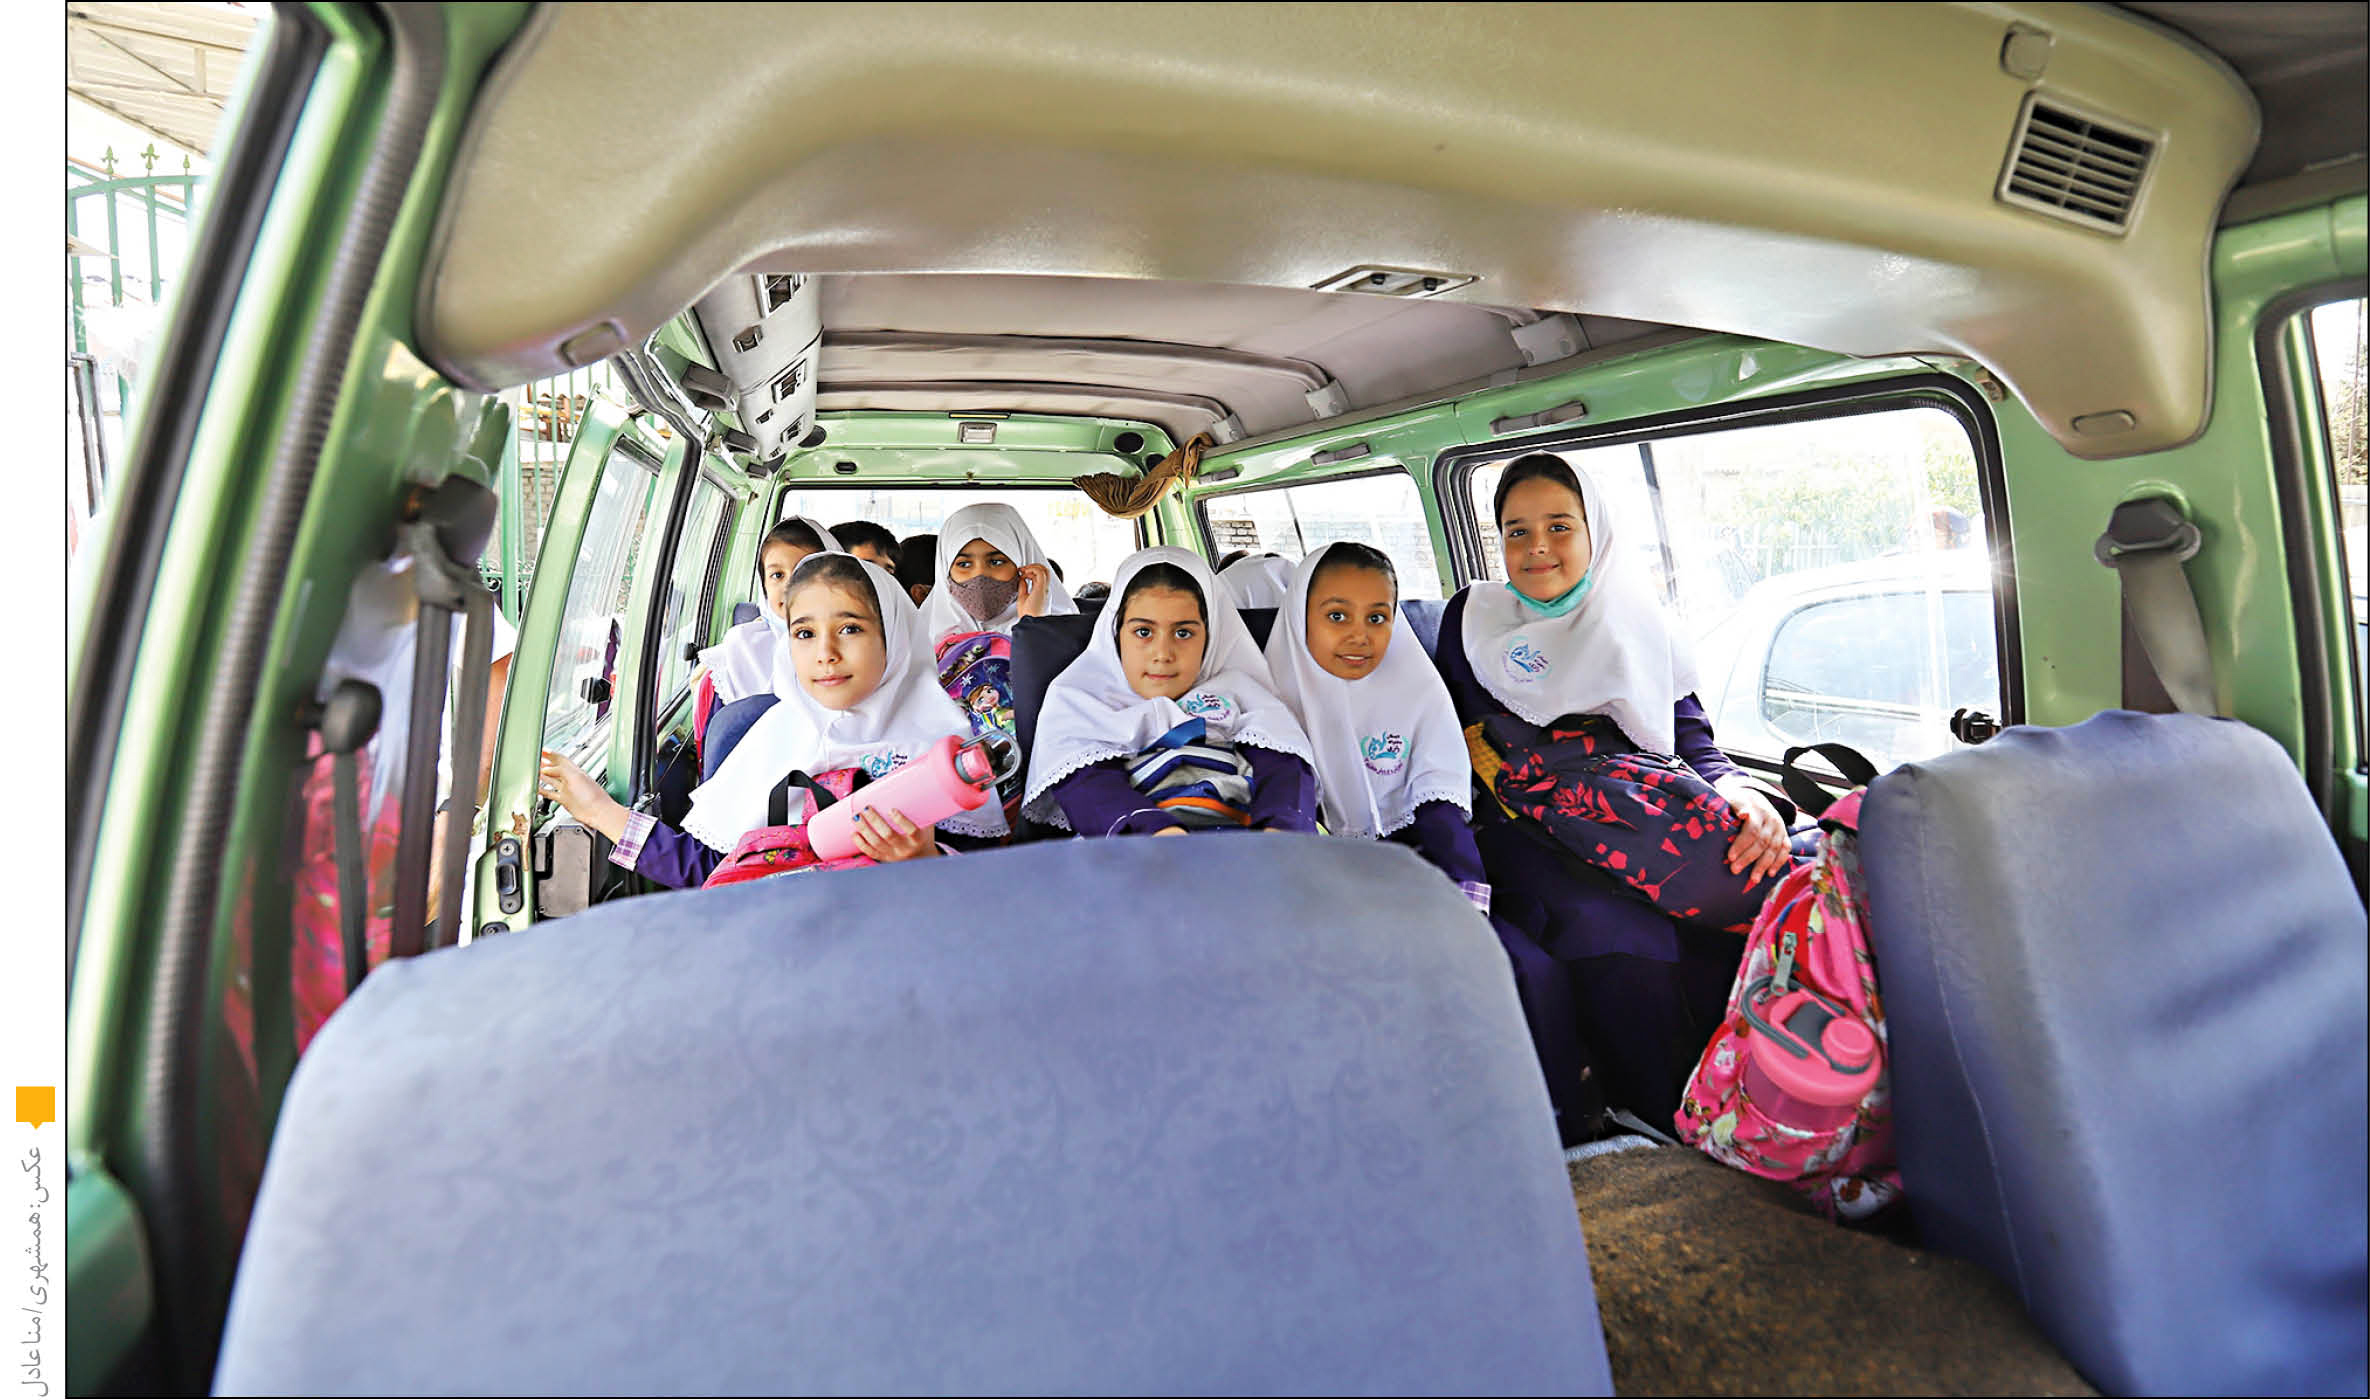 سرویس مدارس دلواپسی همیشگی والدین در مهرماه/کنترل و نظارت پلیس راهور بر سرویس های مدارس